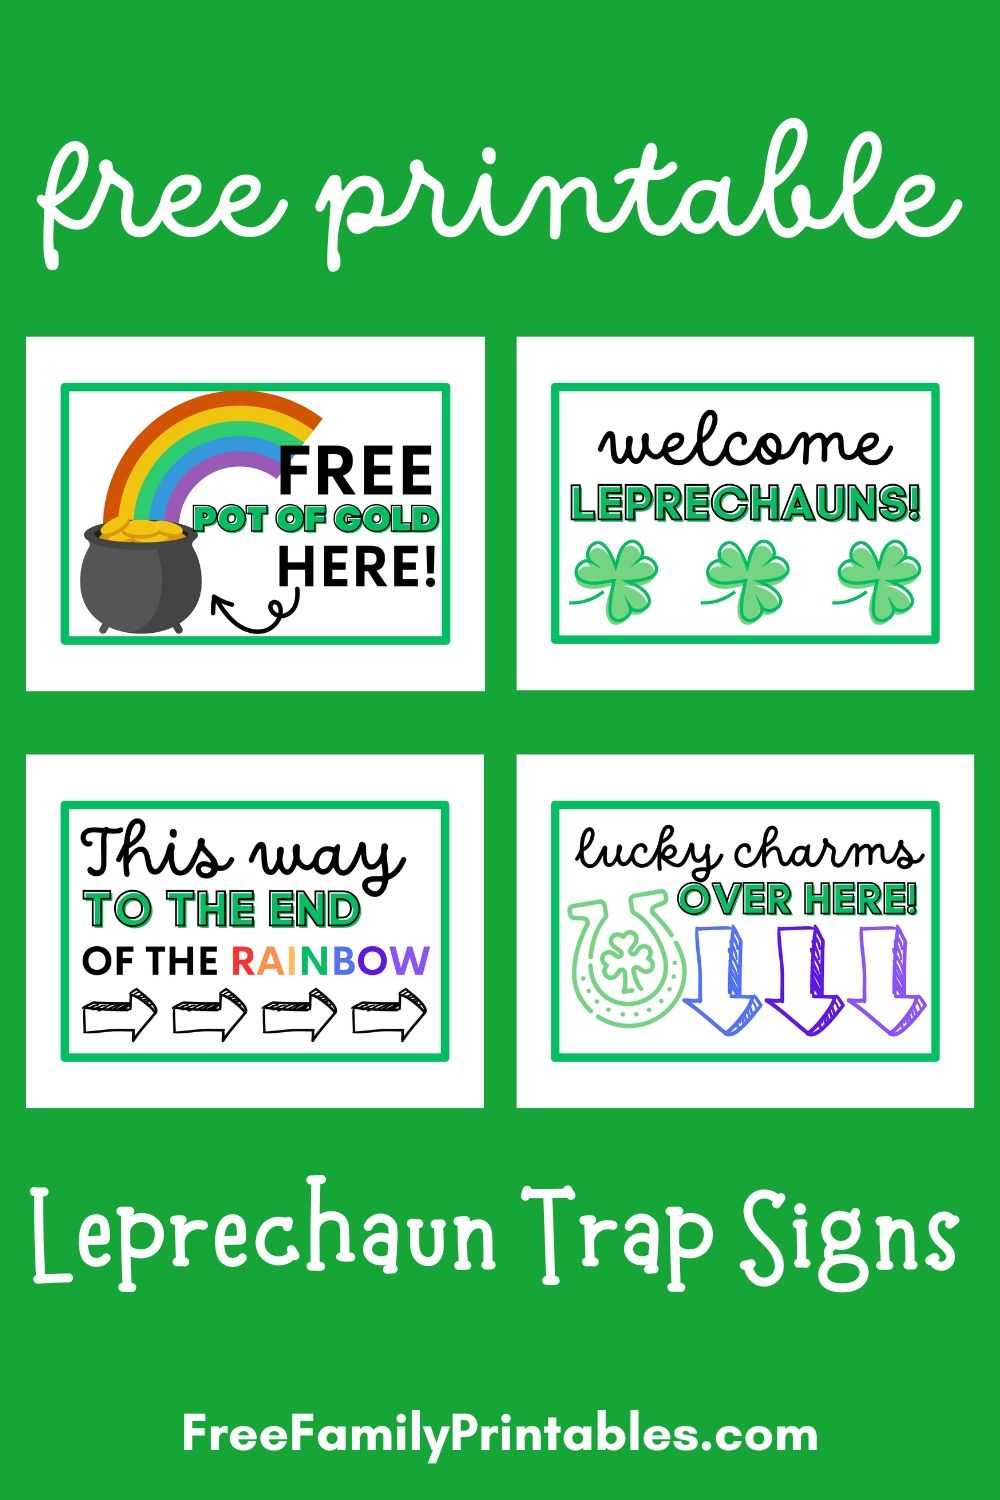 Free Printable Leprechaun Trap Signs Free Family Printables